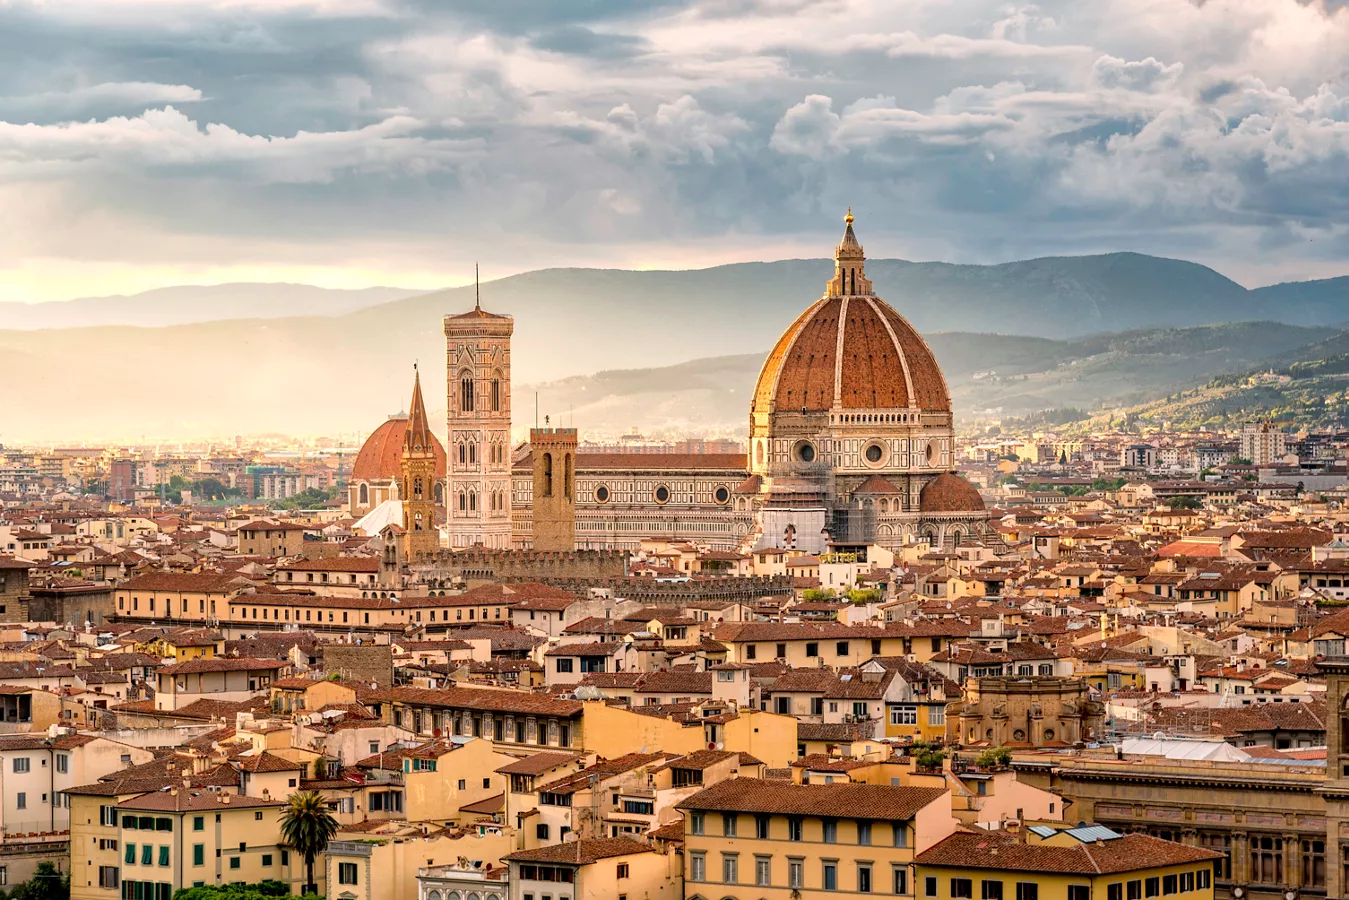 Cosa vedere a Firenze: le migliori attrazioni da visitare